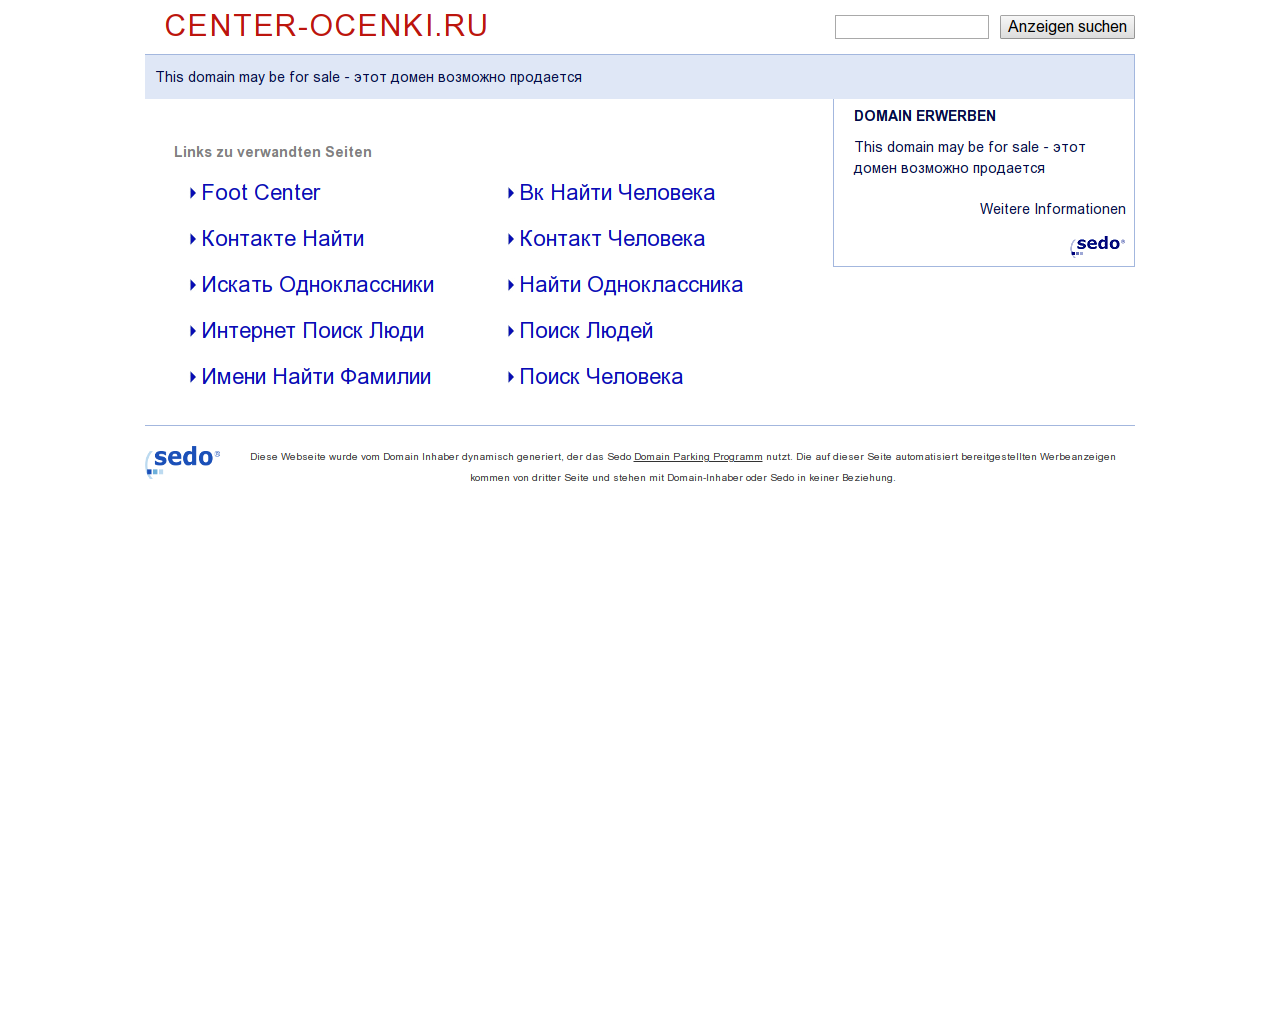 Изображение сайта center-ocenki.ru в разрешении 1280x1024